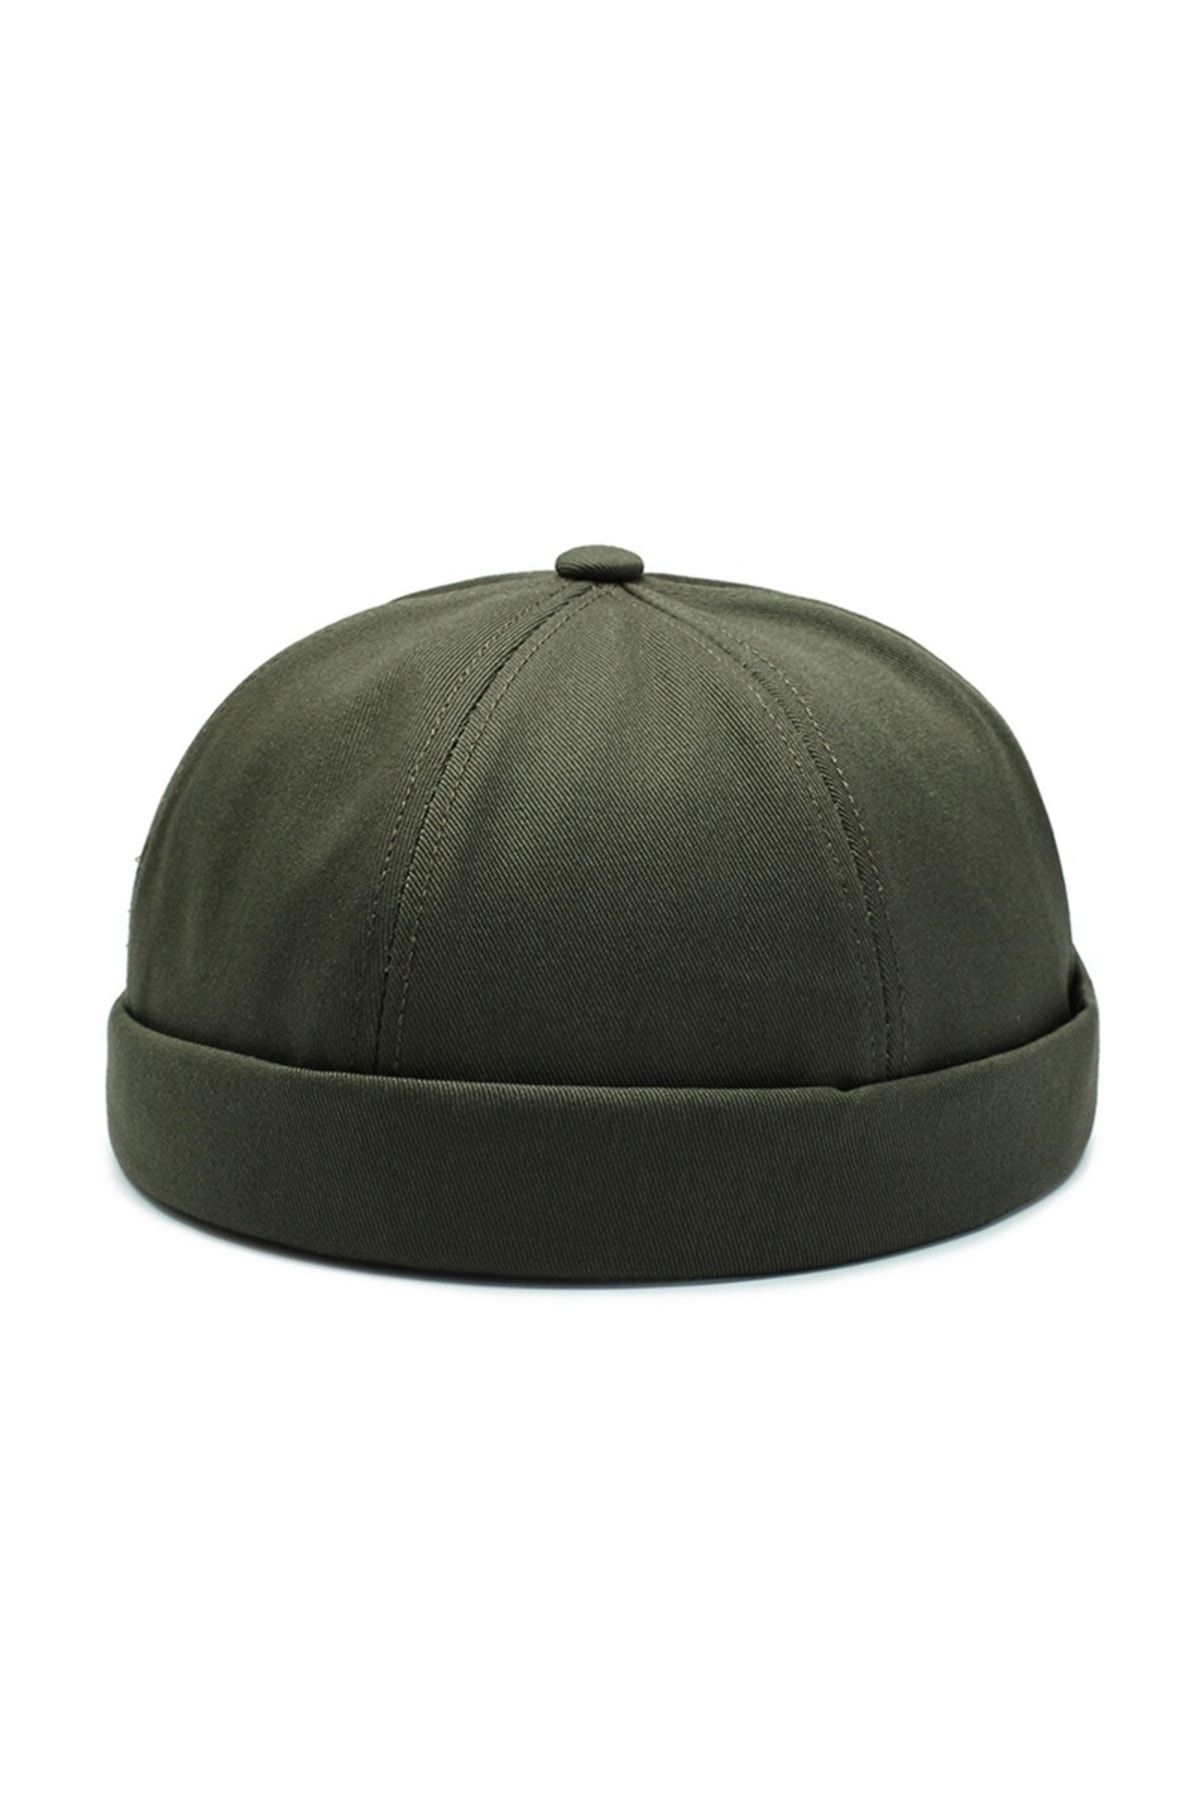 Rupen Kraft Unisex %100 Pamuk Cap Ayarlanabilir Docker Şapka Yazlık Takke Şapka Retro Şapka Takke Şapka